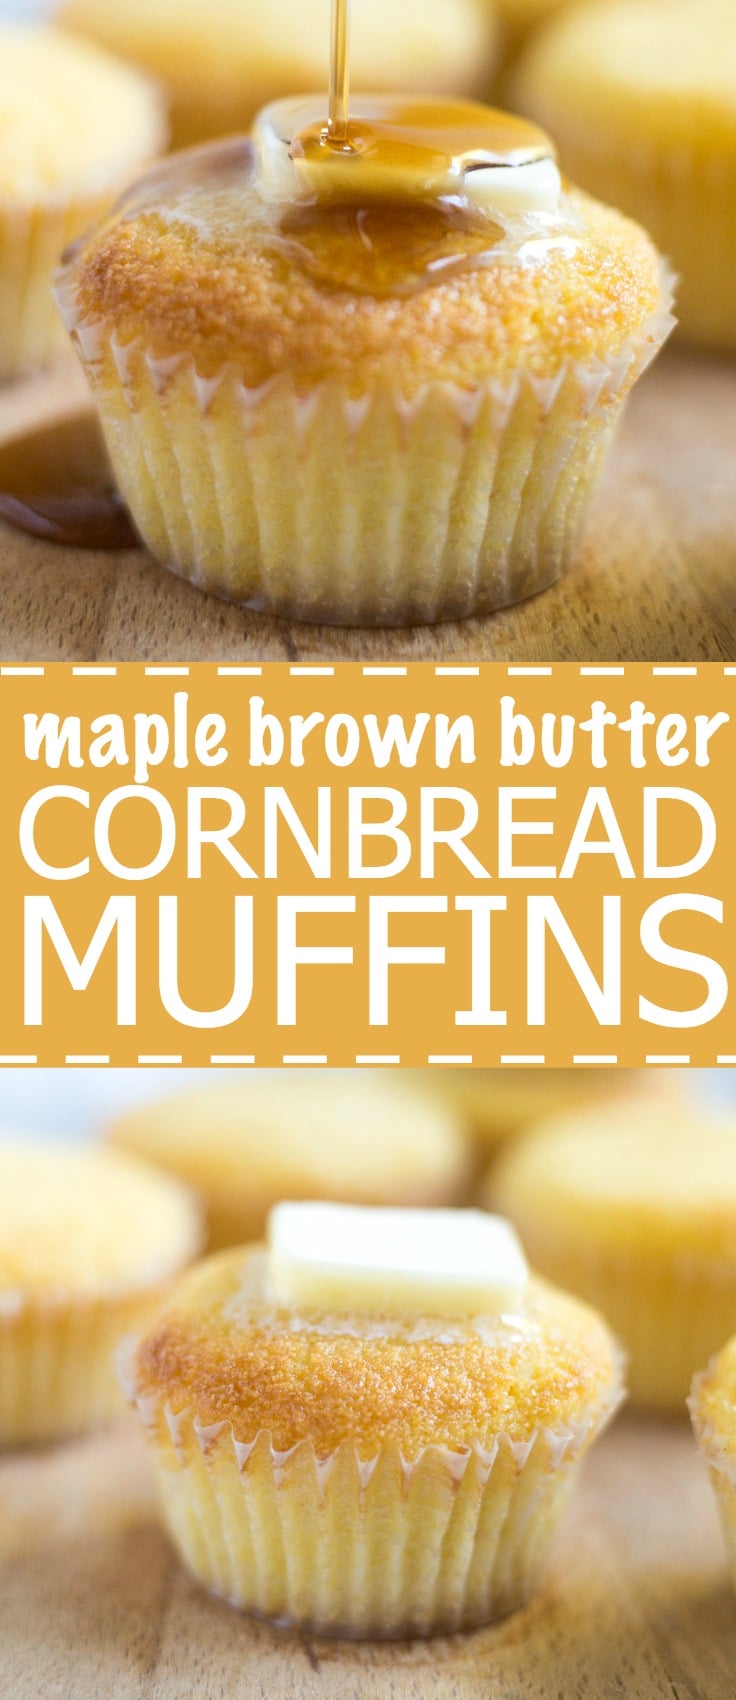 sweet cornbread muffins recipe